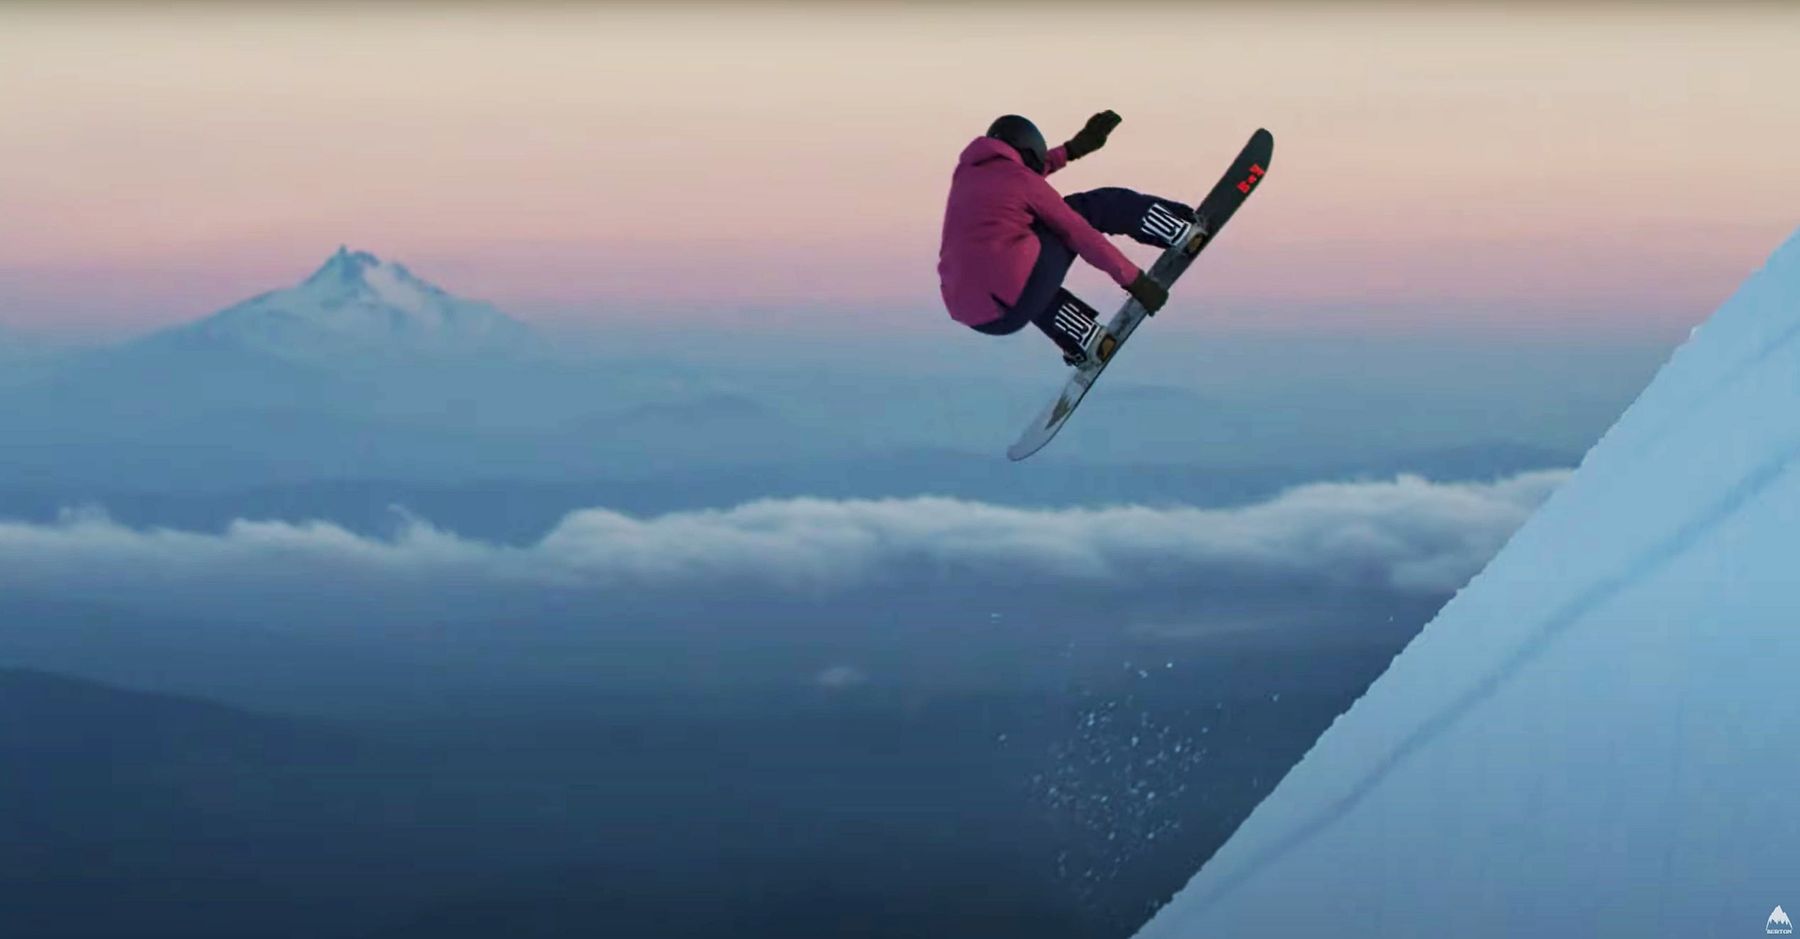 Burton One World Snowboard Movie Released